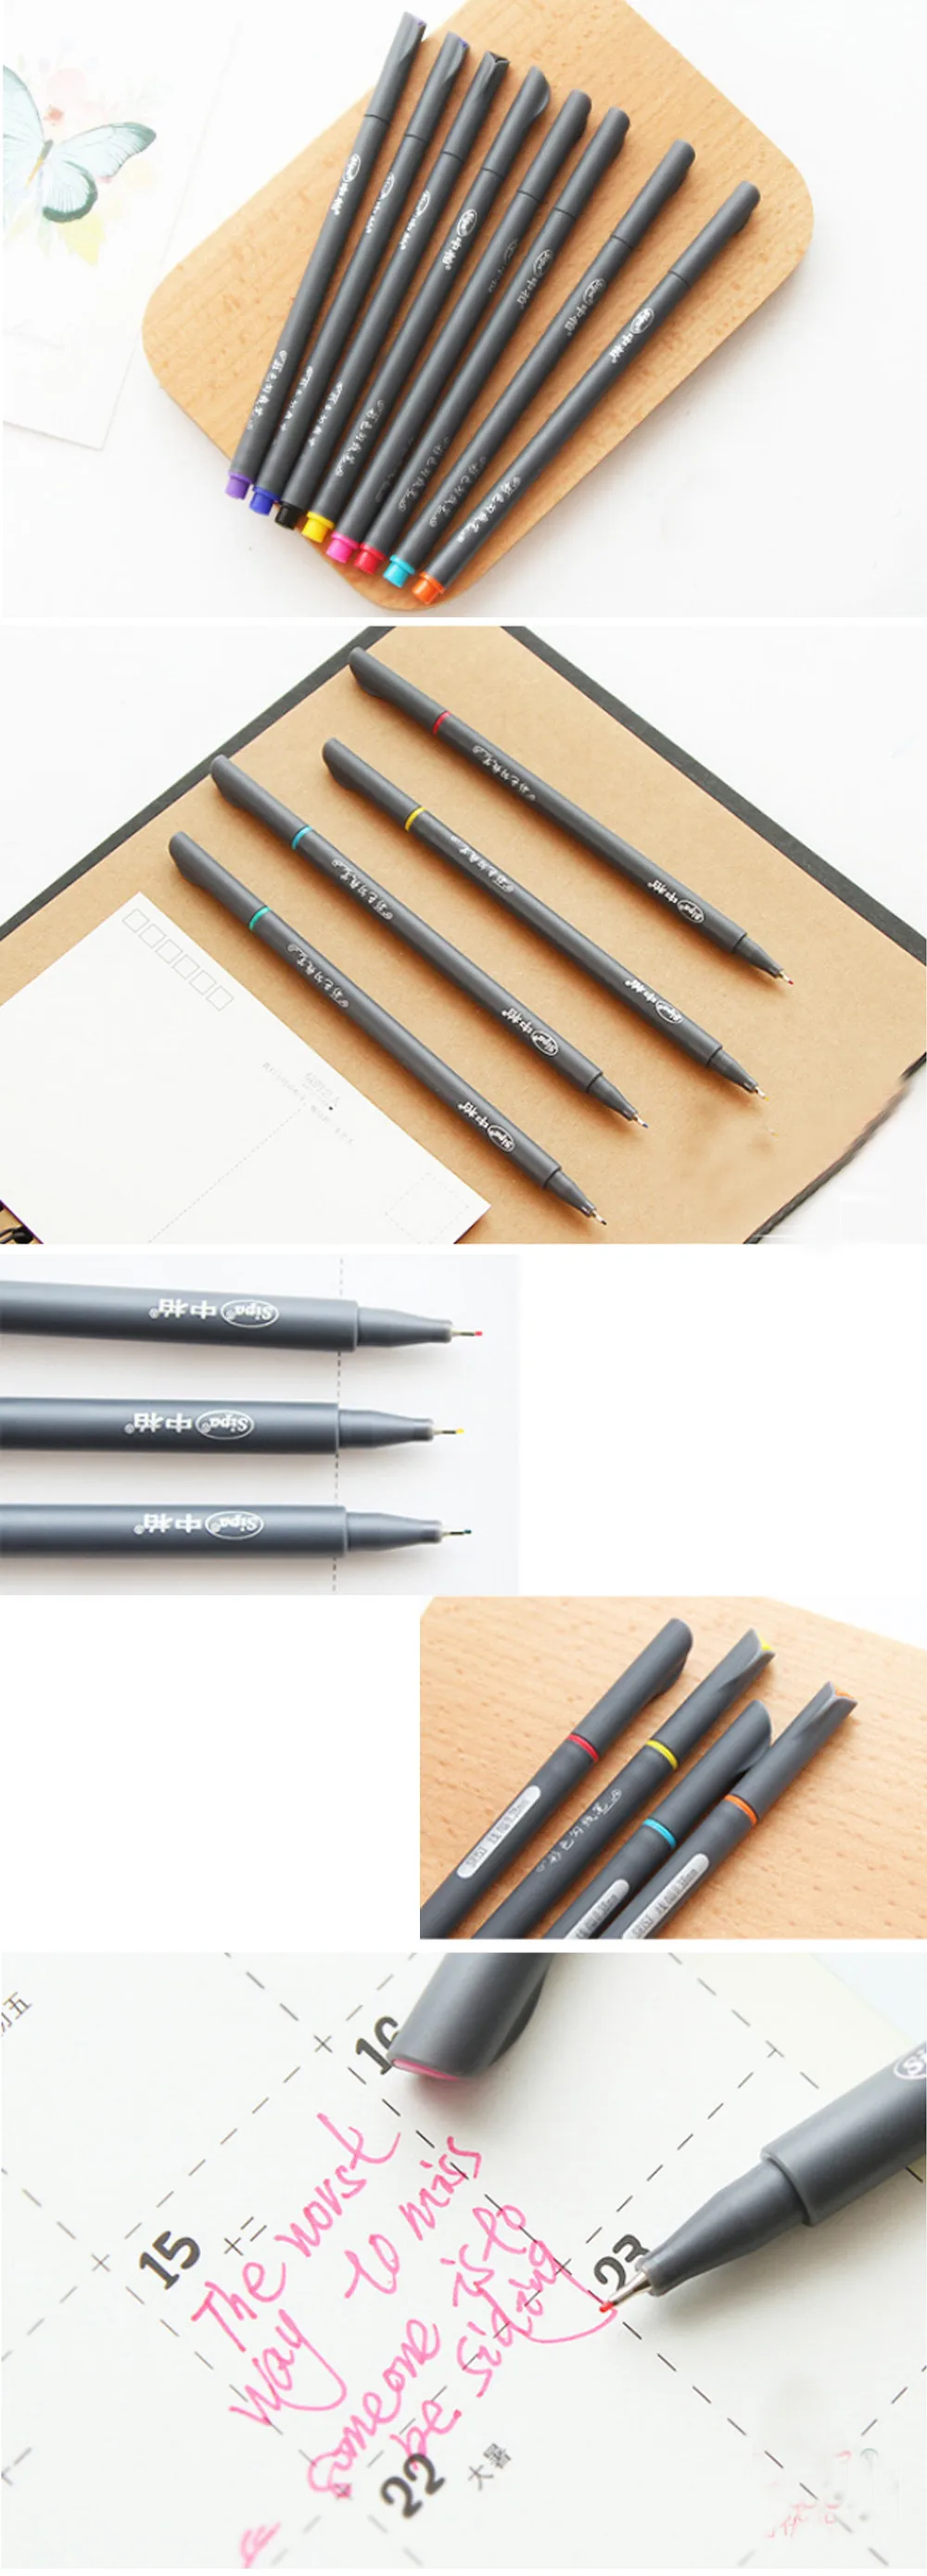 10 шт./партия 0,38 мм цветная ручка для рисования гелевая ручка материал escolar canetas школьные принадлежности канцелярские принадлежности